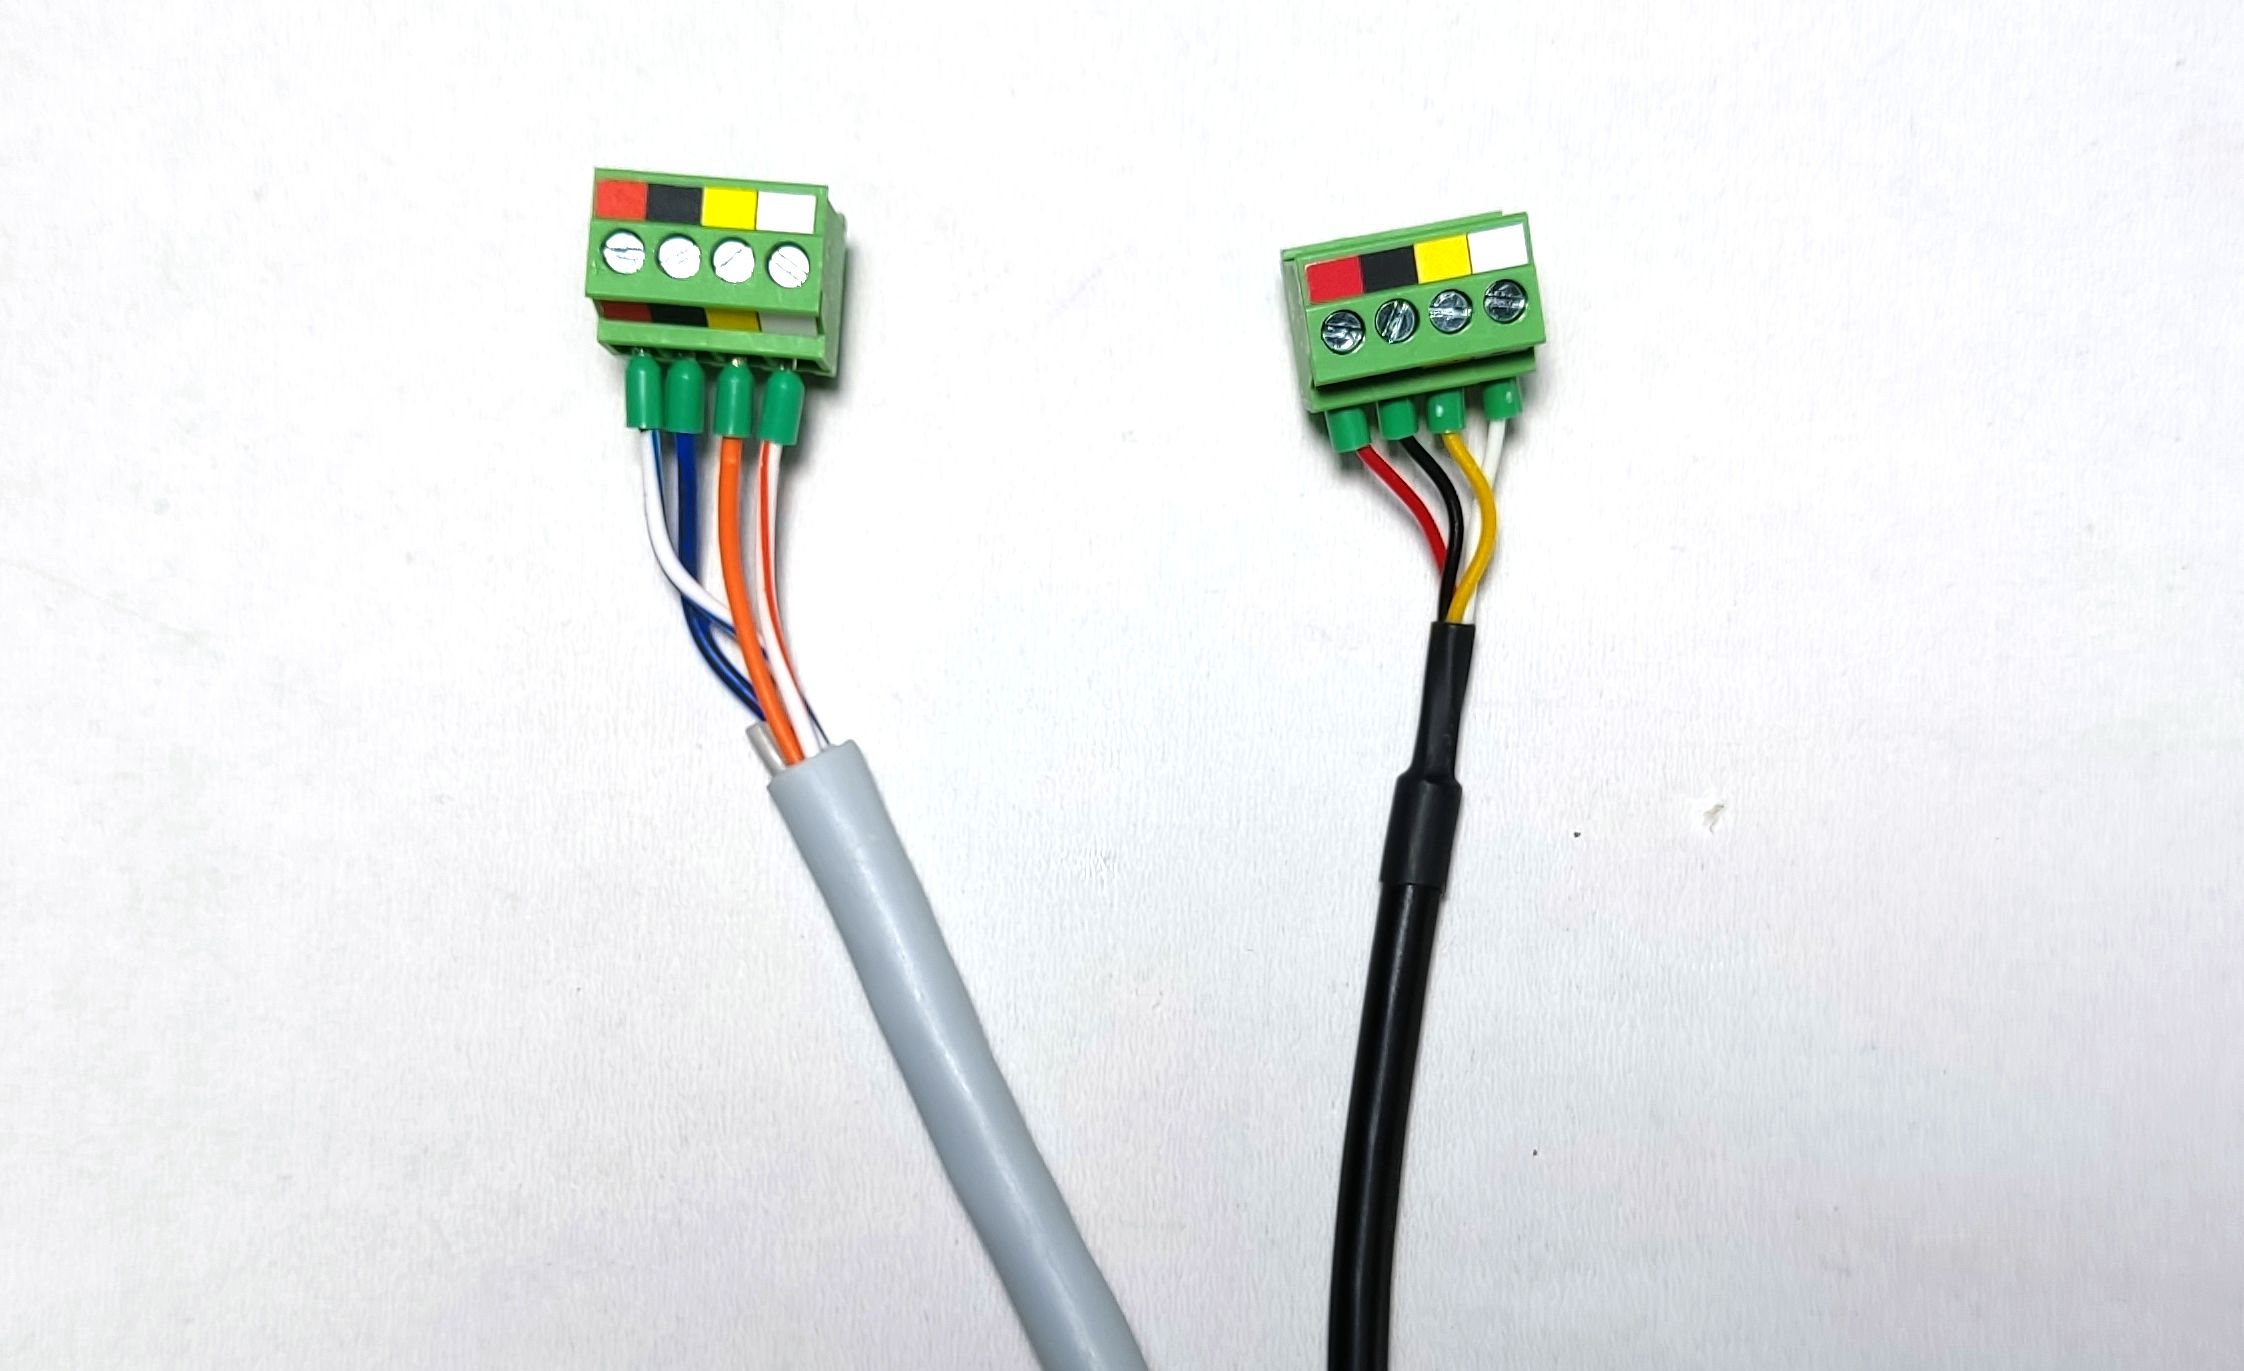 Слева — первая версия кабеля, справа — вторая